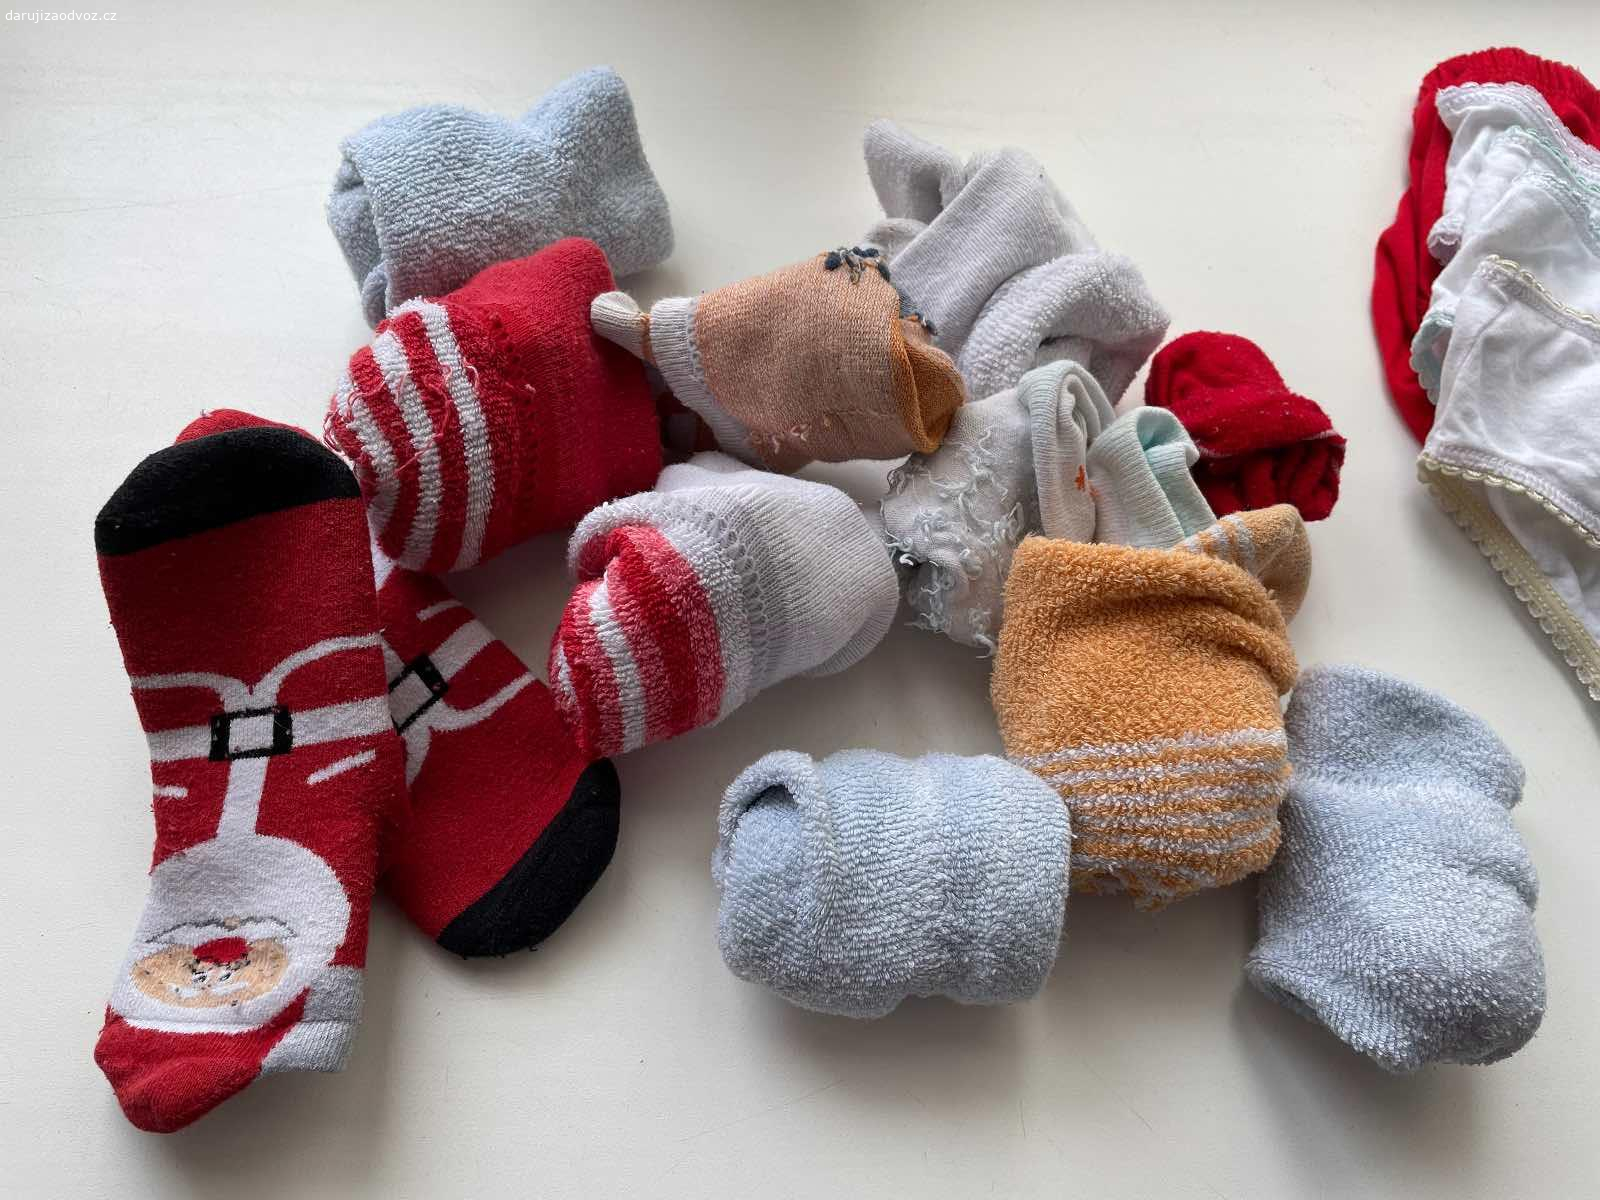 Ponožky pro mimi15-18. Nošené, velikost 15-18, vydrží déle.